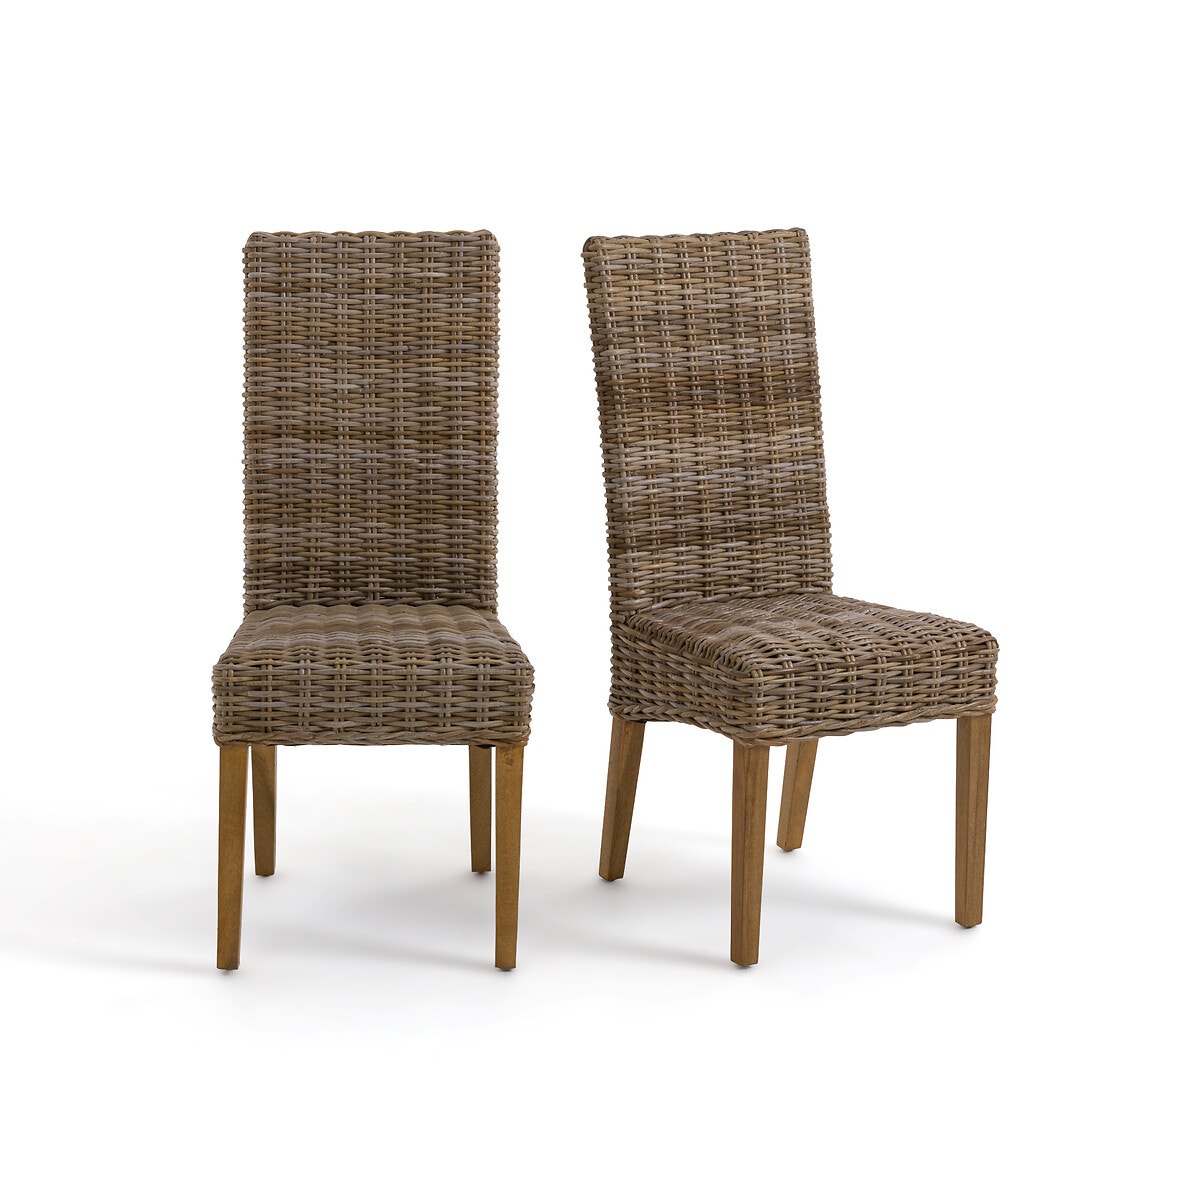 Καρέκλες με πλέξη kubu και ψηλή πλάτη, INQALUIT (σετ των 2)